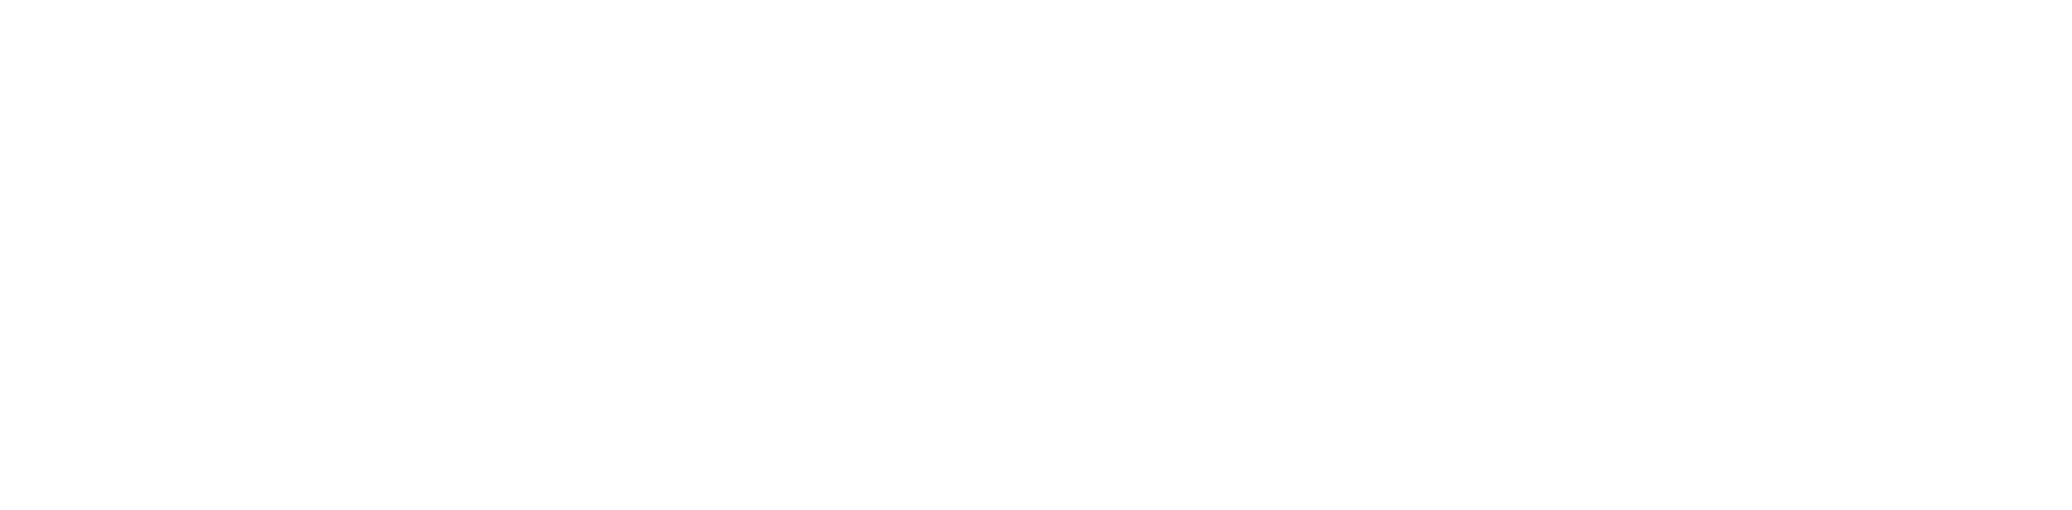 Banco Atlántida SAP